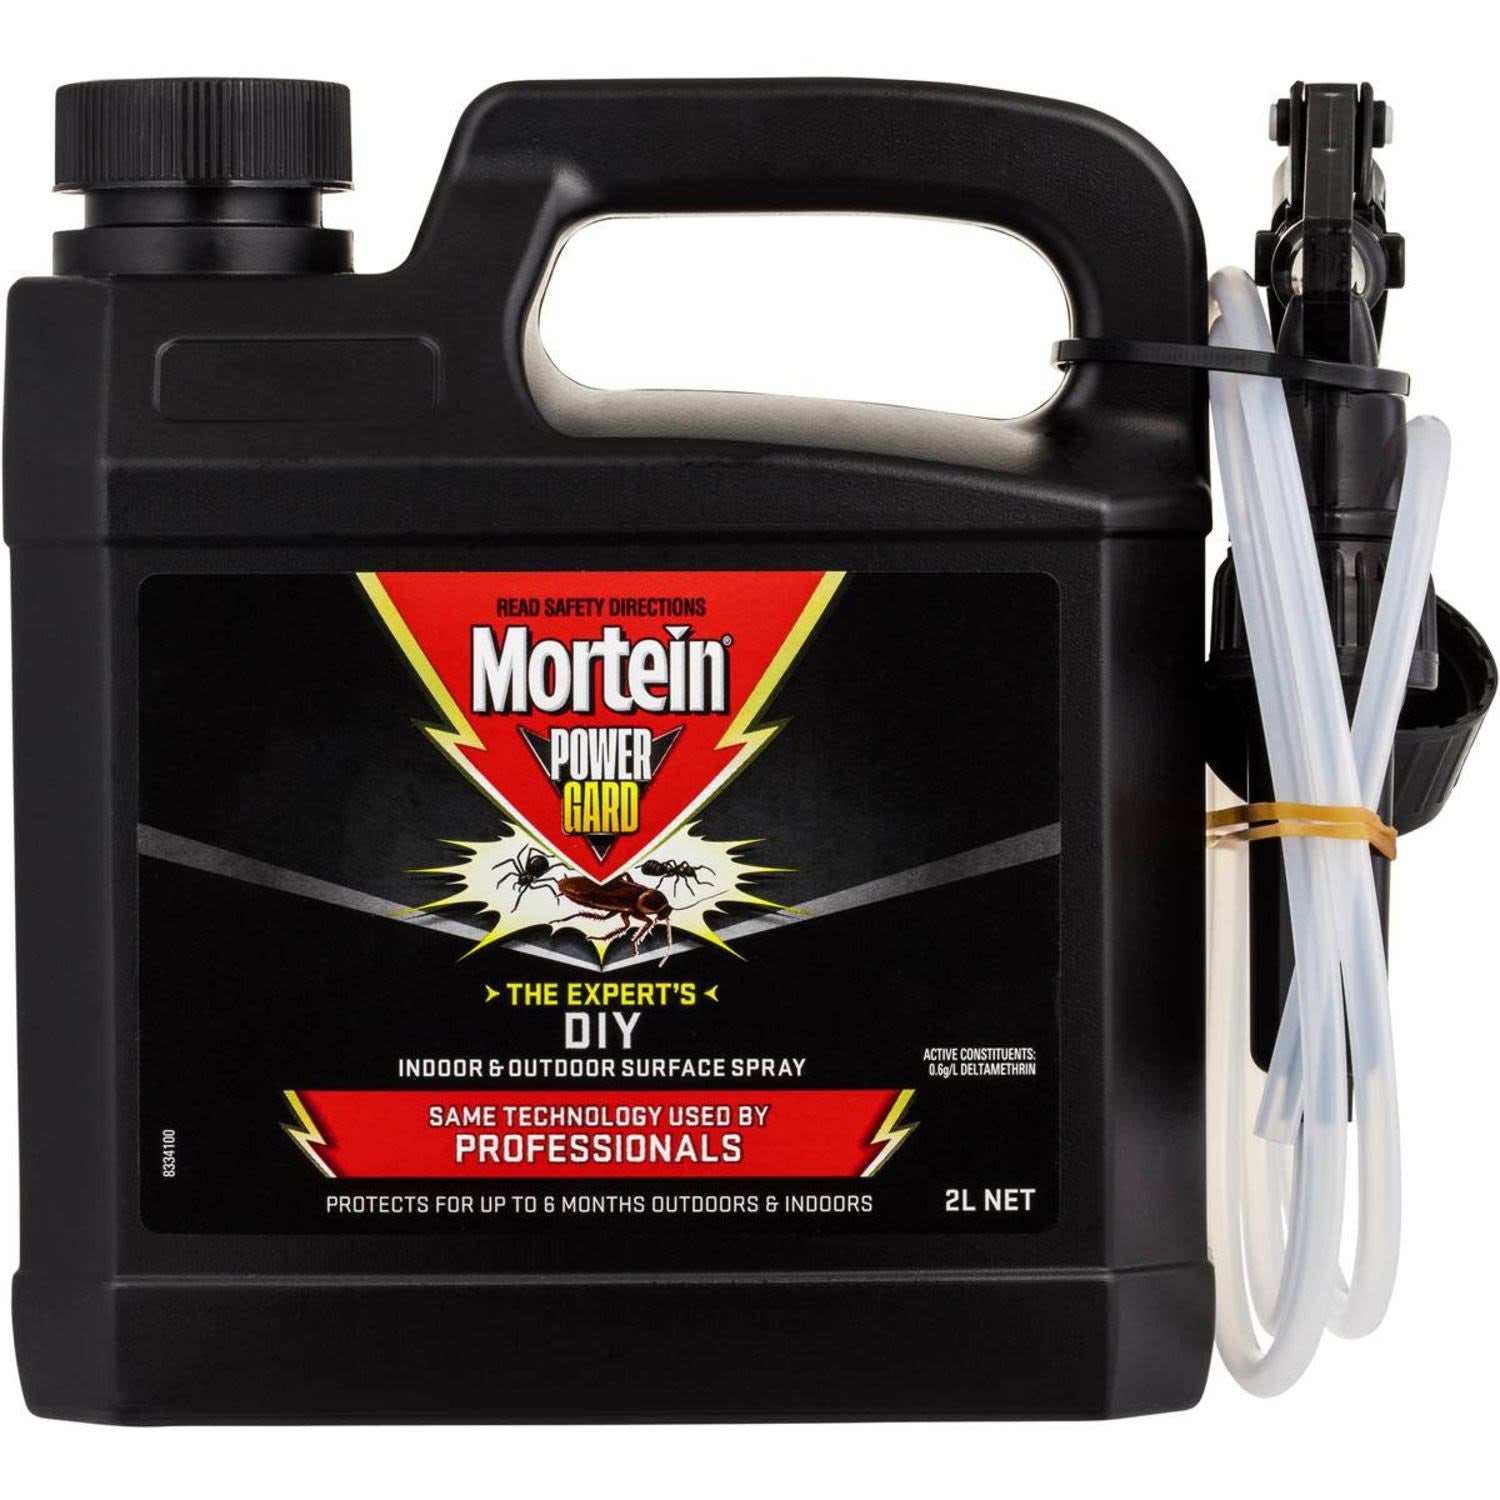 Mortein Powergard Diy Indoor & Outdoor Insect Surface Spray 2L